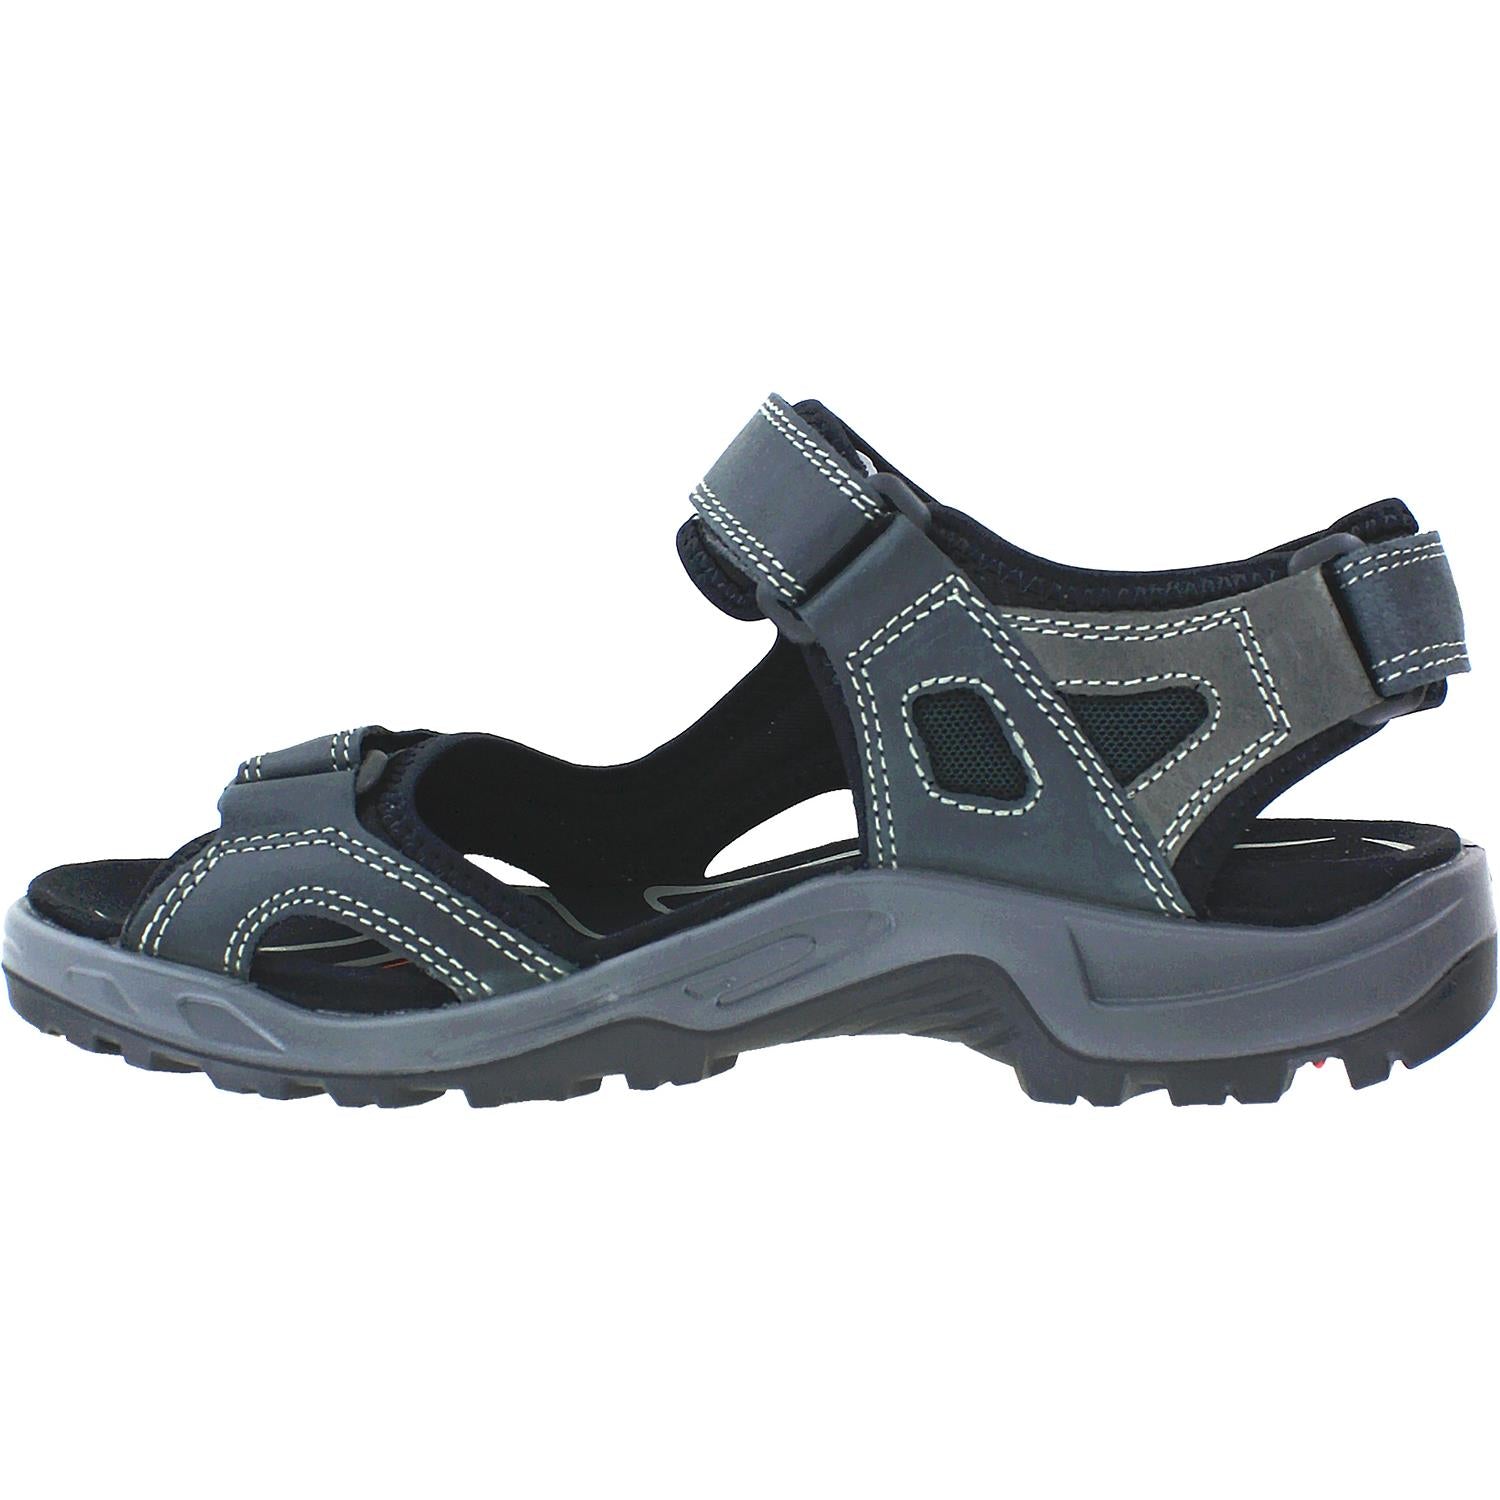 Ecco Yucatan Marine | Ecco Men's Outdoor Sandals | Footwear etc.